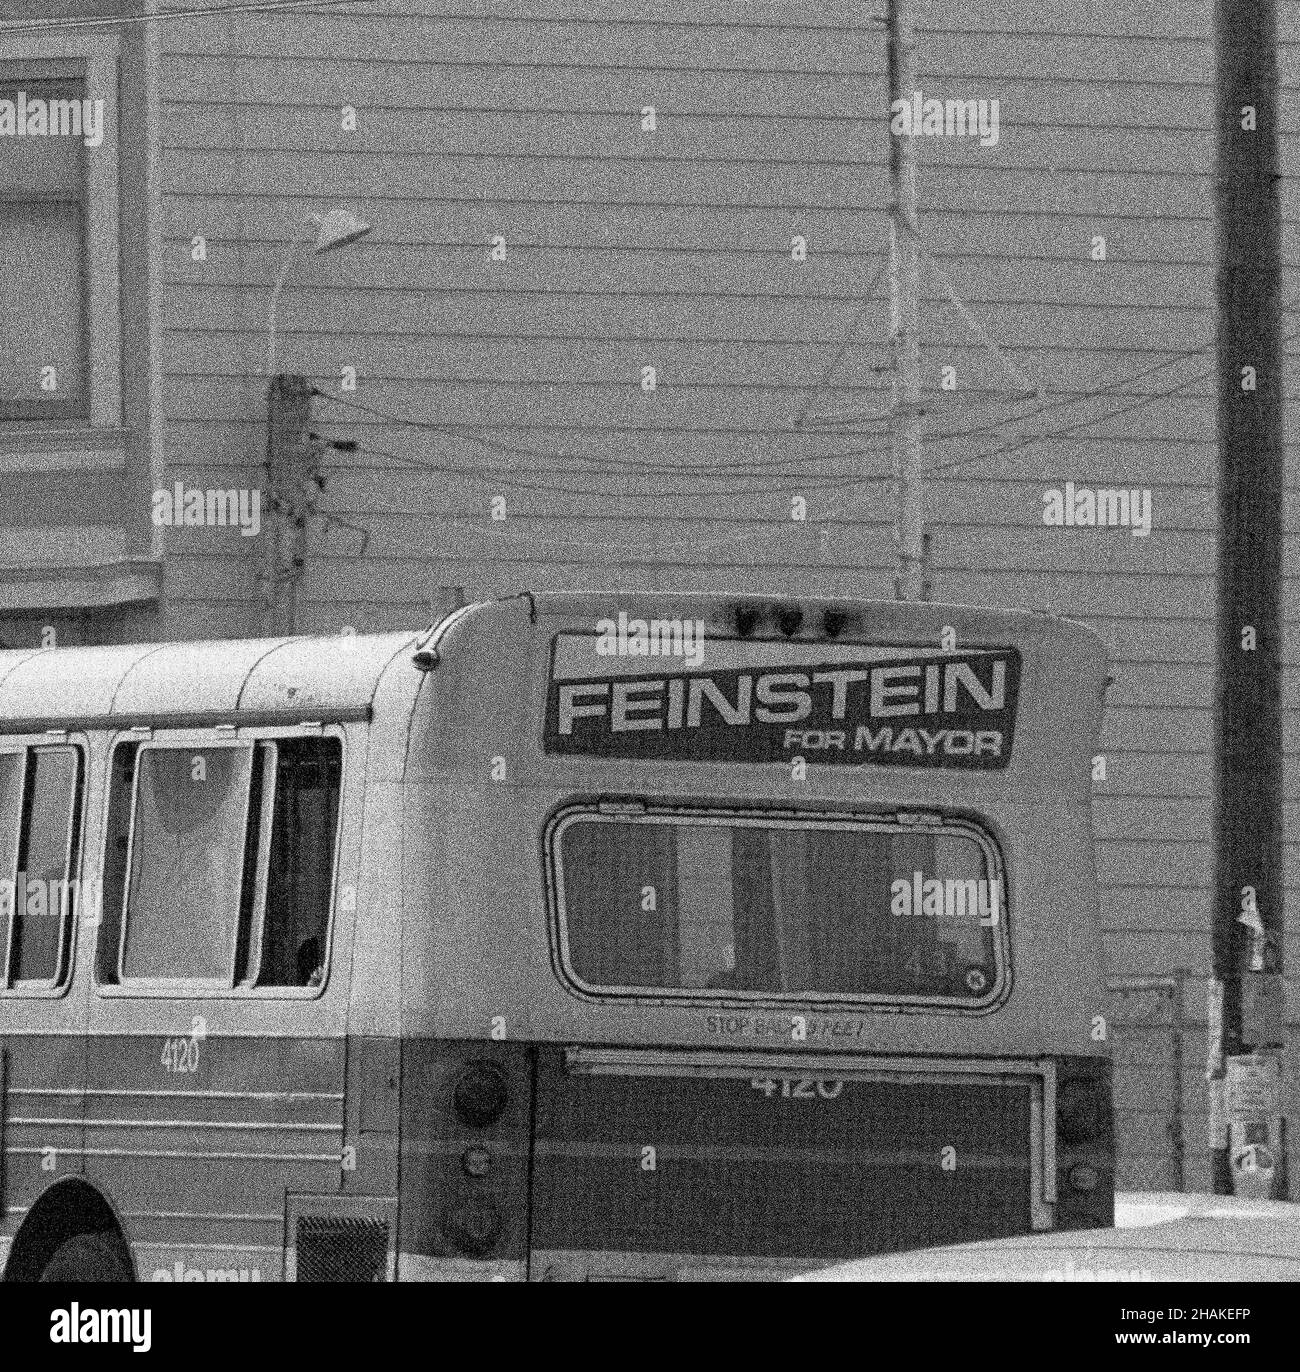 Dianne Feinstein per i manifesti della campagna del sindaco di San Francisco su un autobus MUNI a San Francisco, California, 1970s Foto Stock